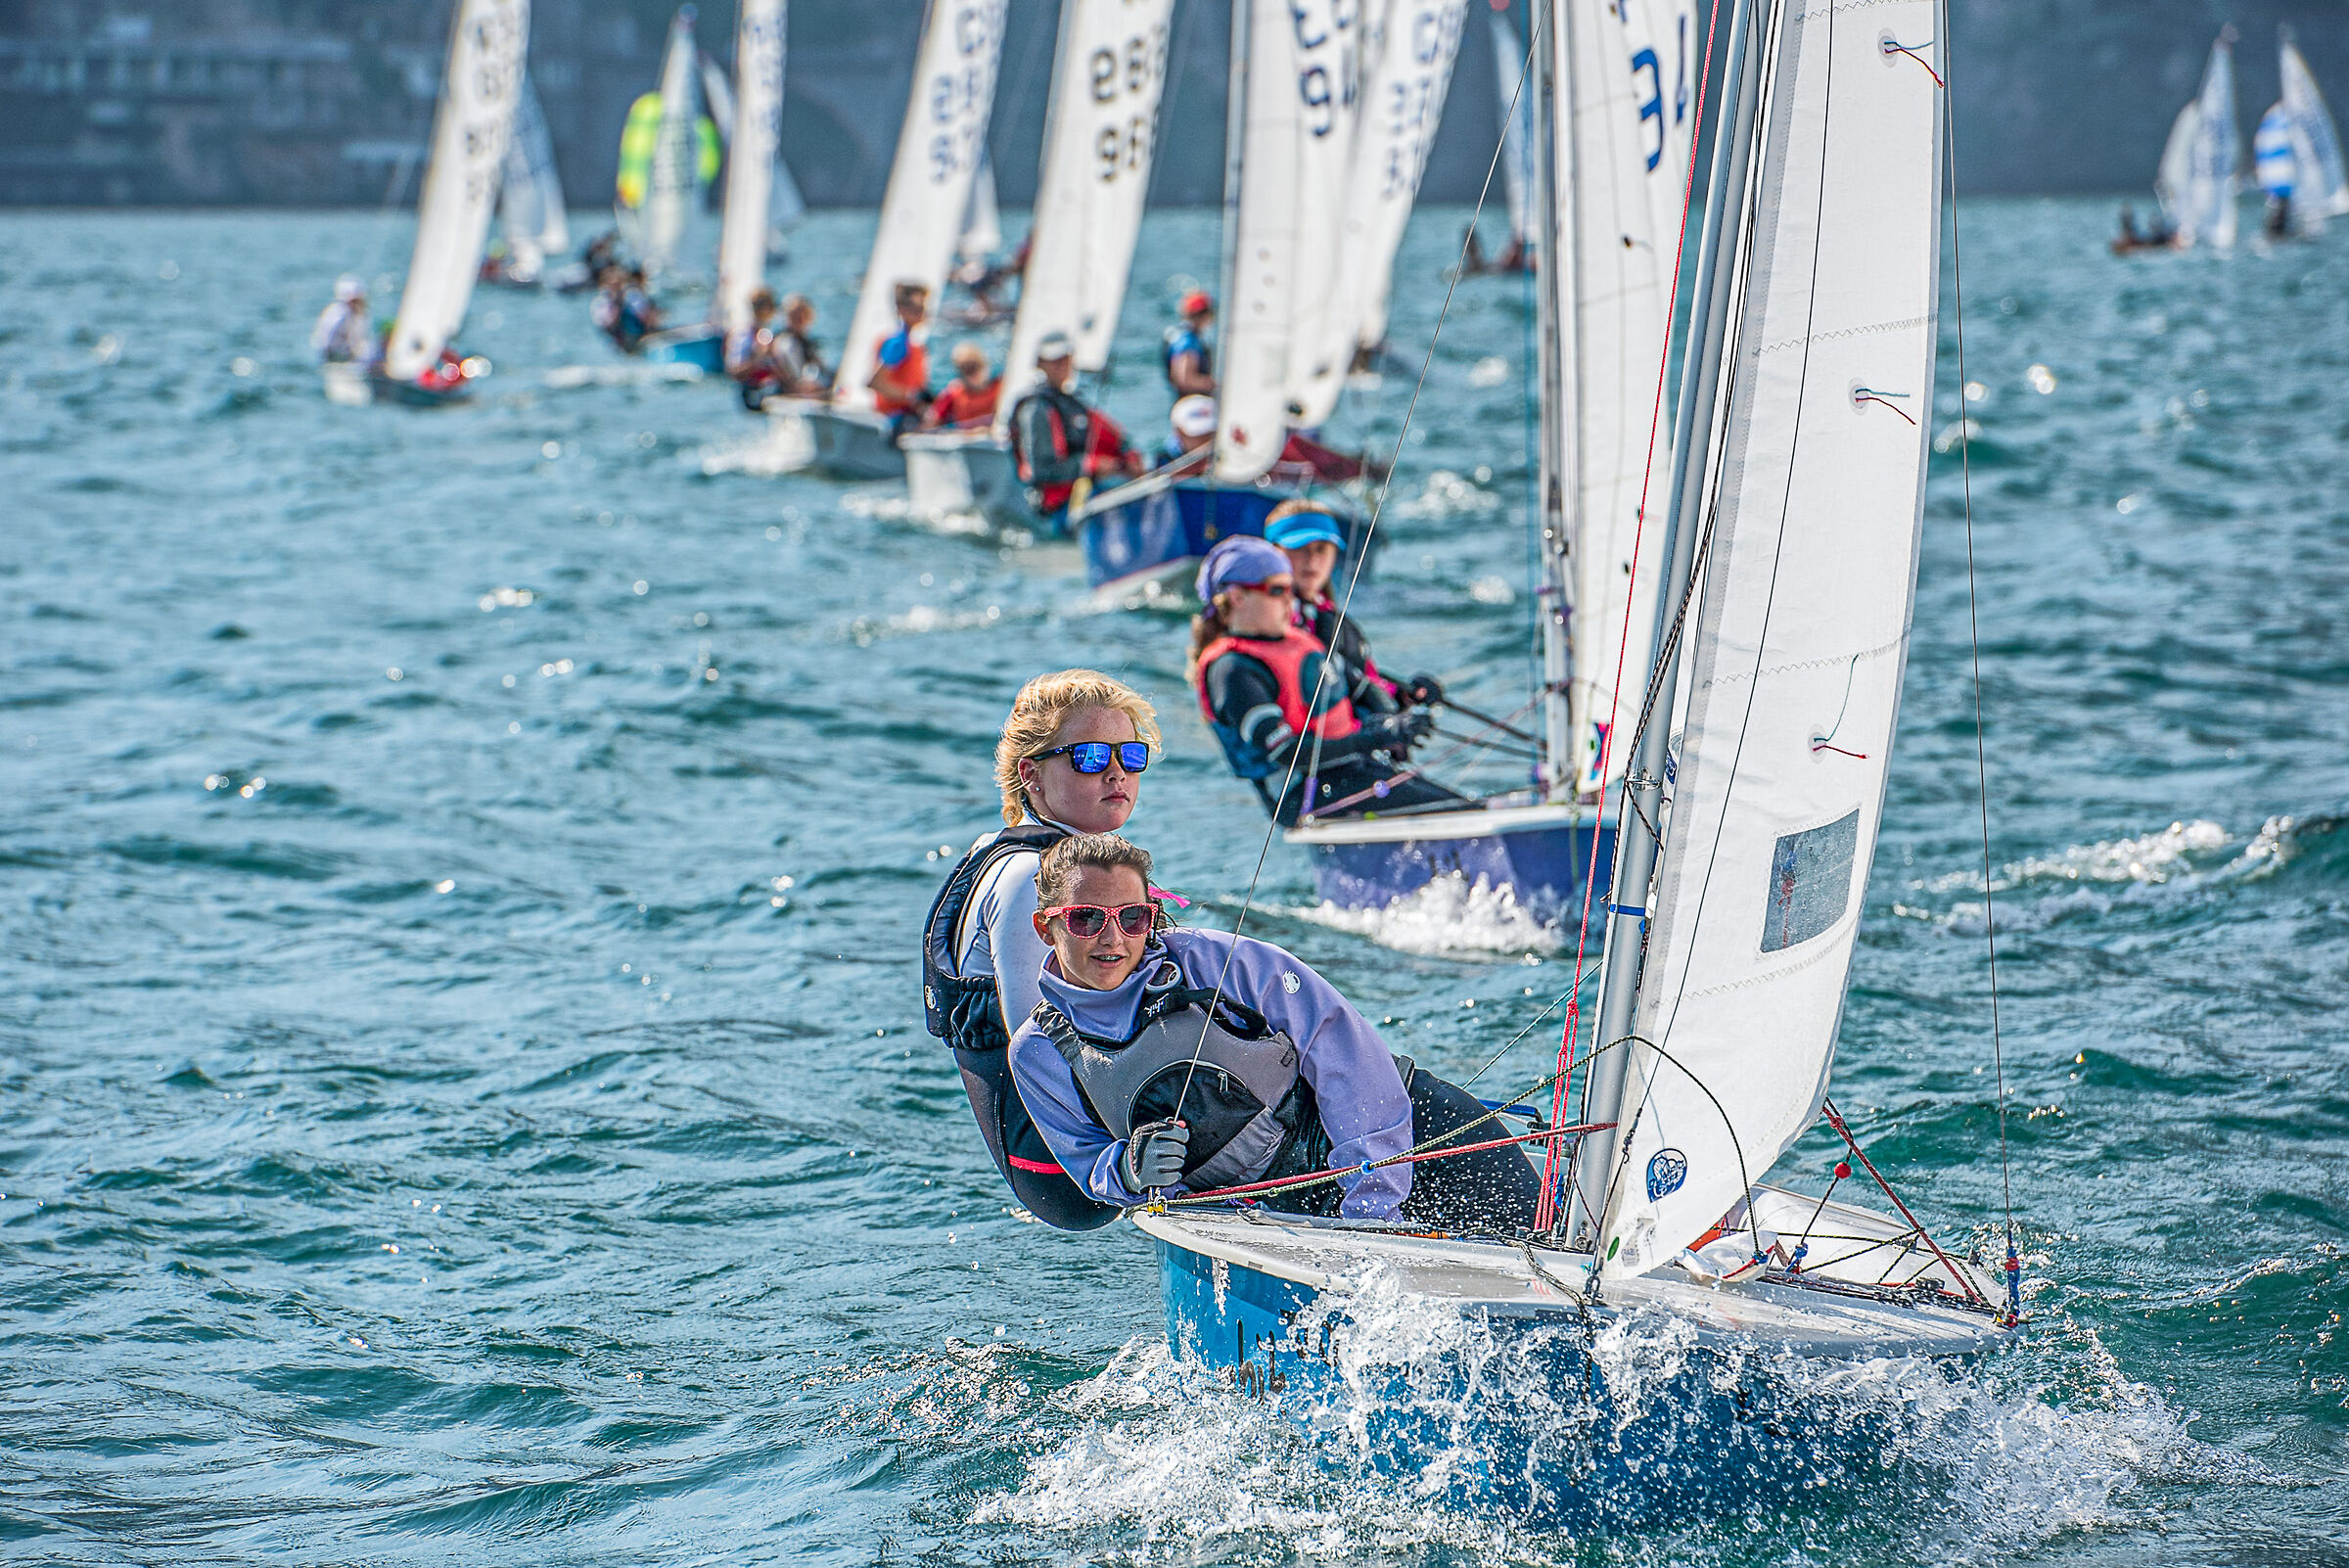 World Youth Sailing Championship in Riva del Garda...